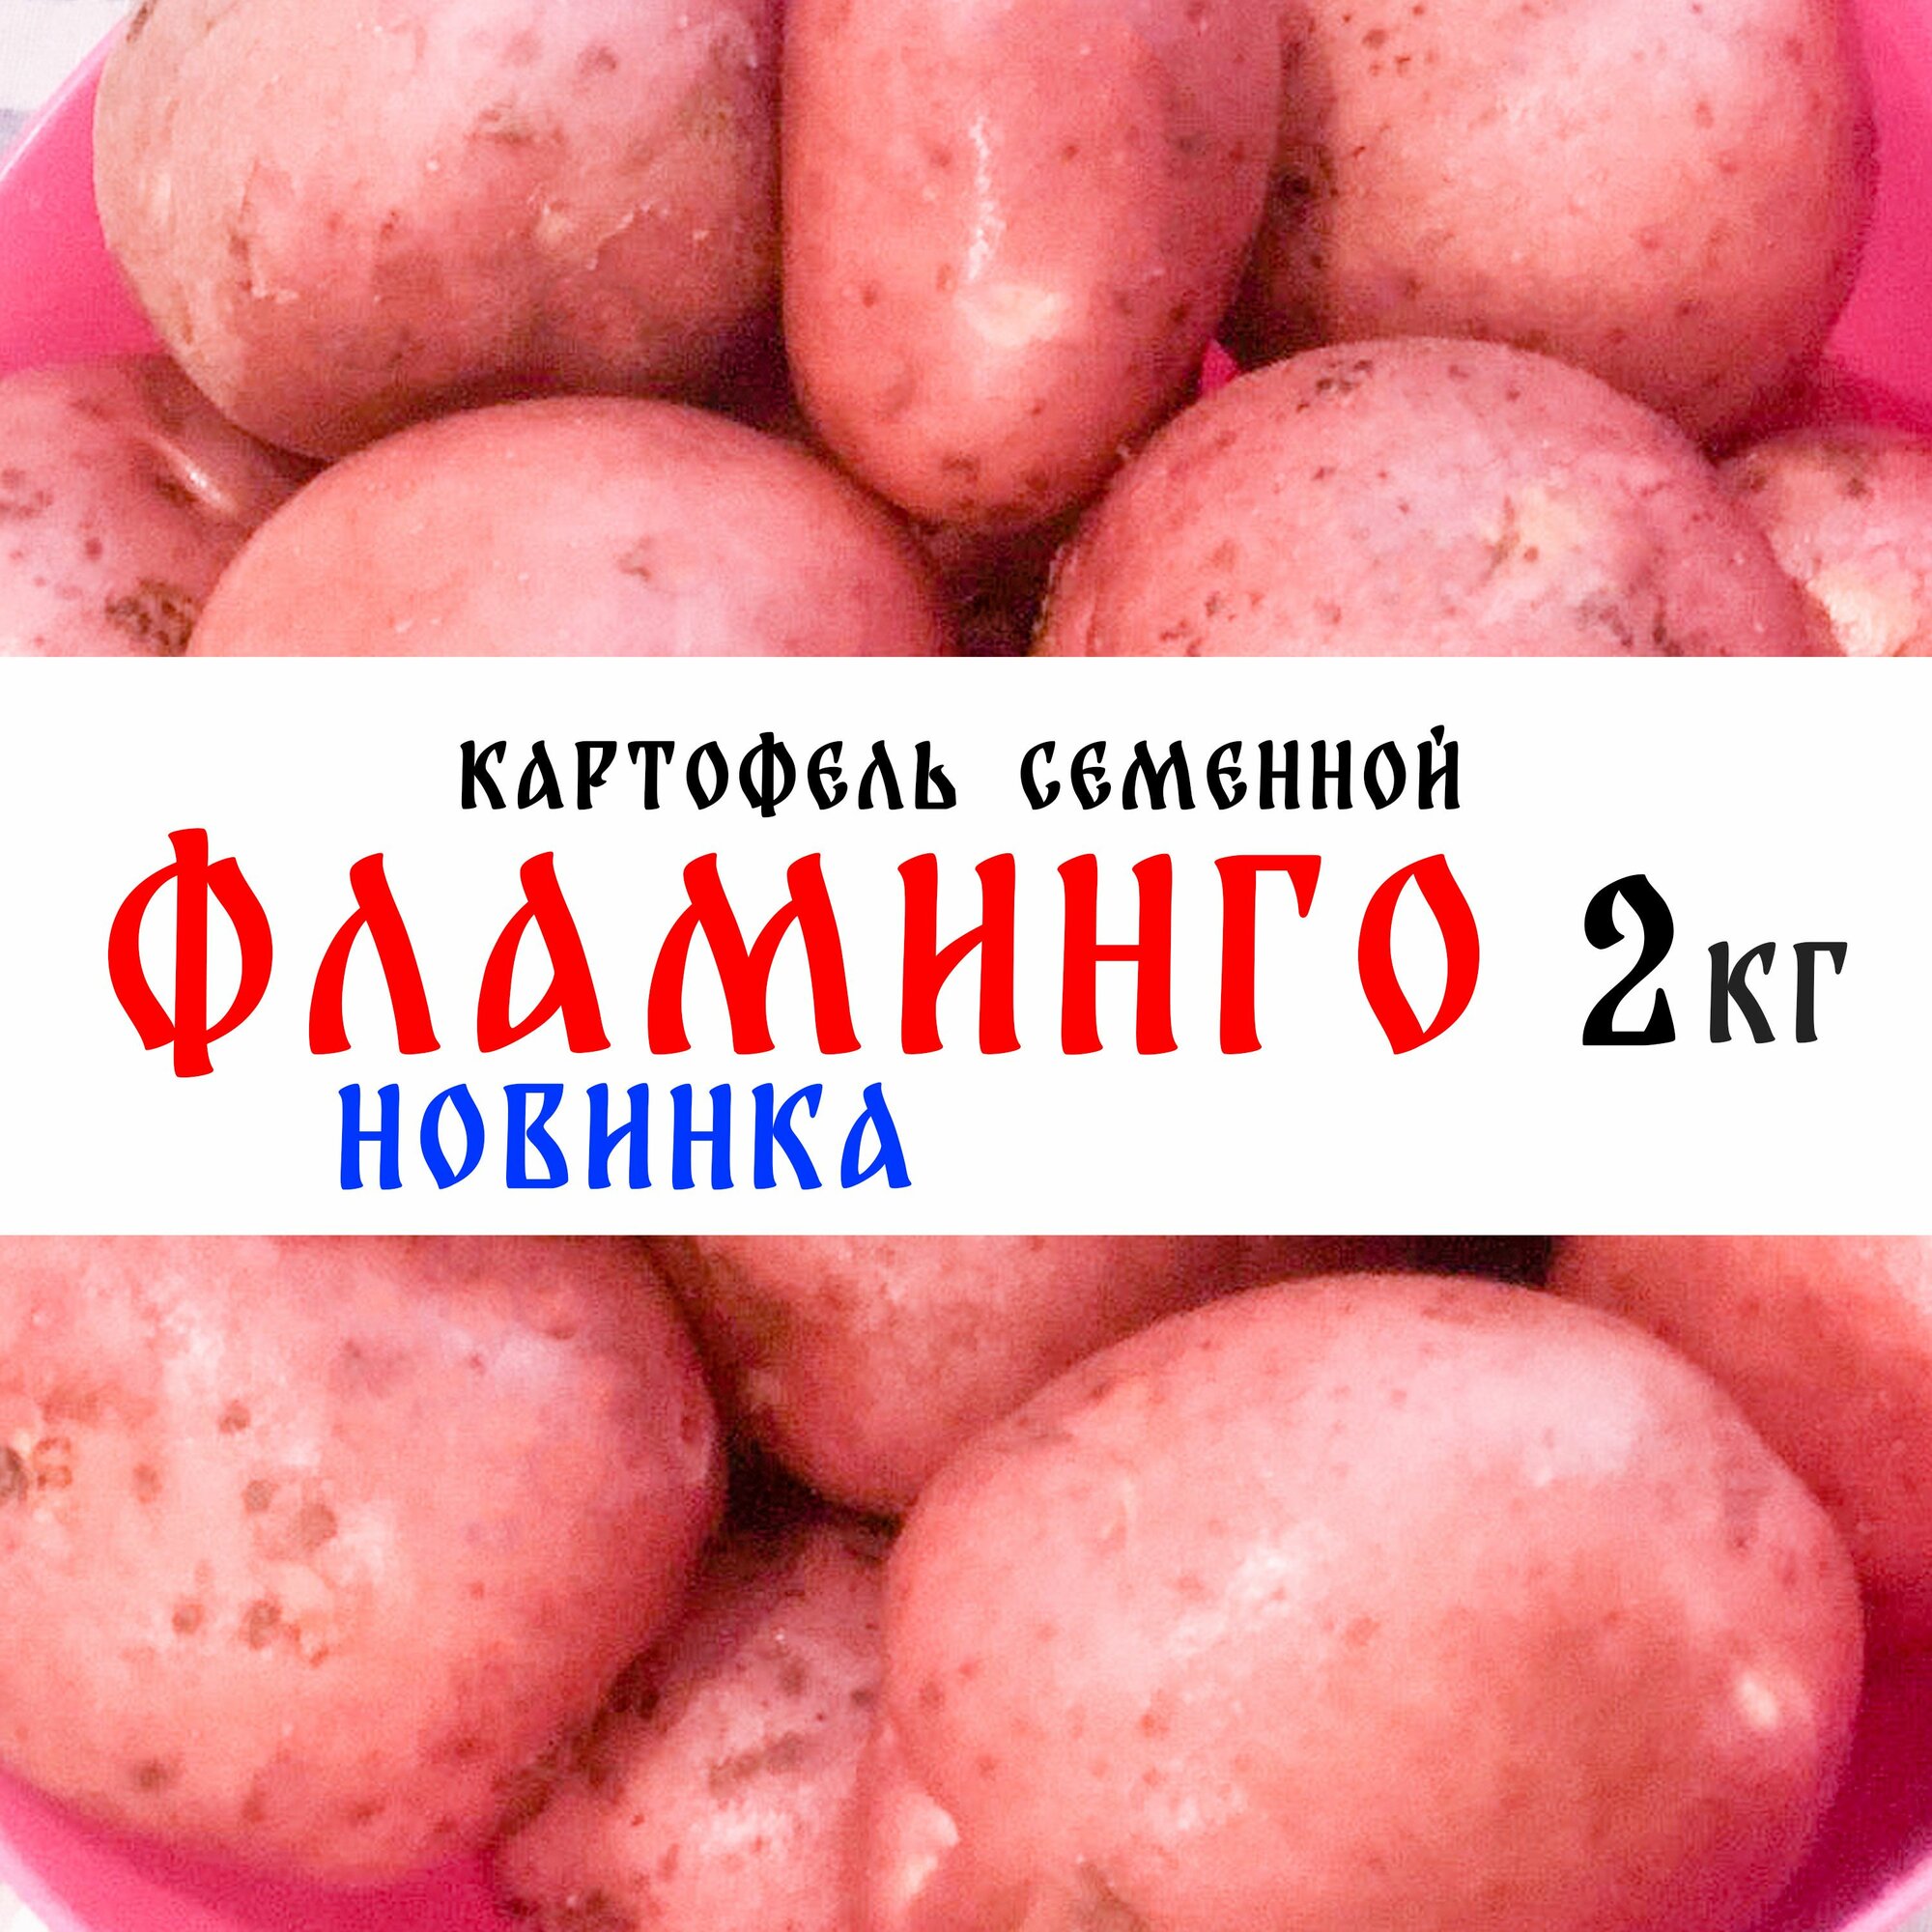 Семенной картофель сорта "Фламинго" 2кг, клубни, 1я репродукция (новинка)